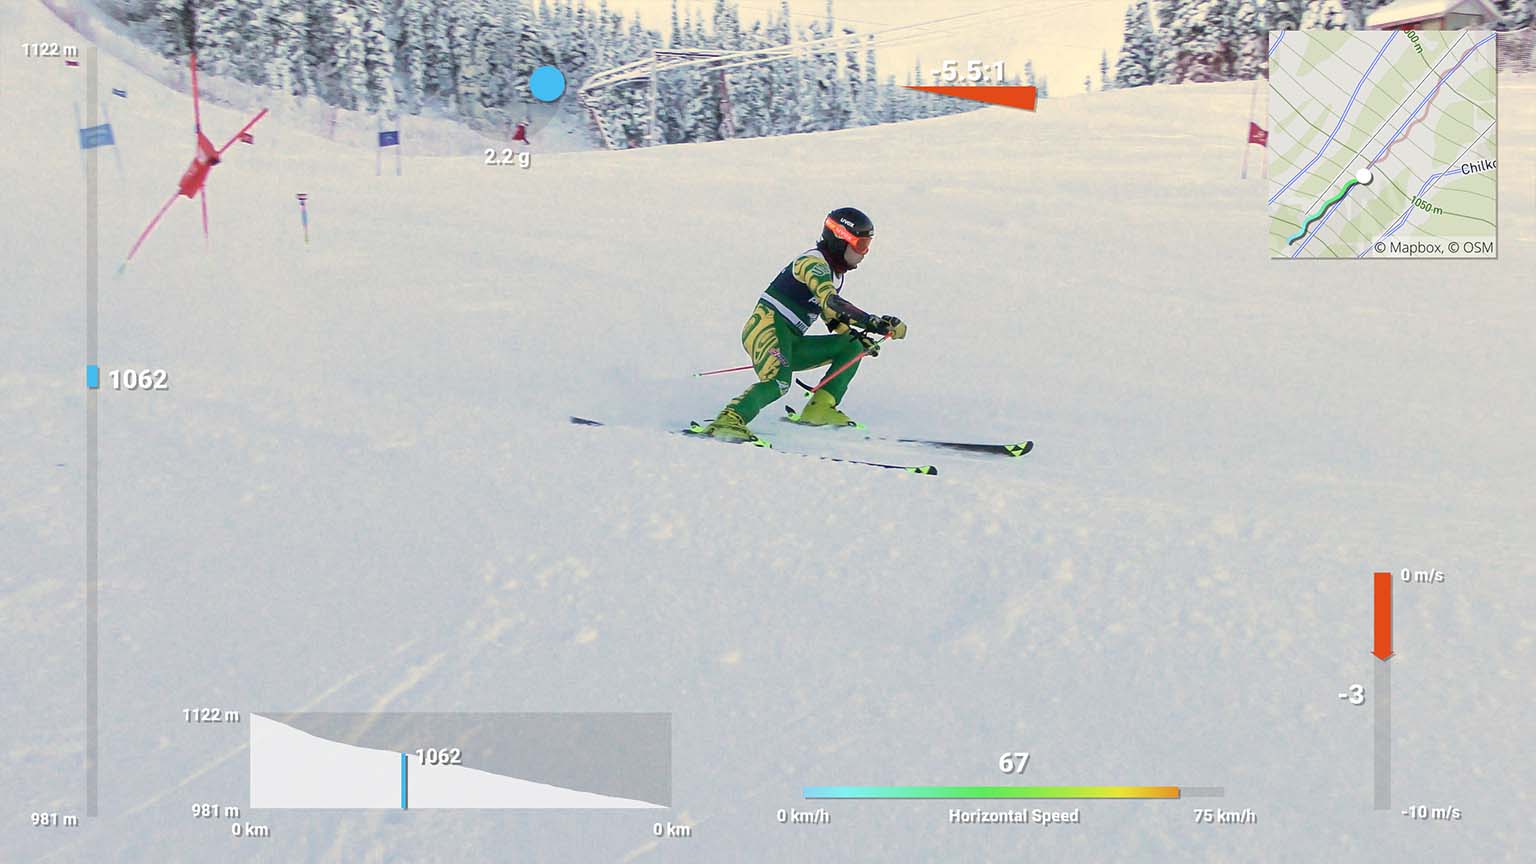 ski sensors timing display